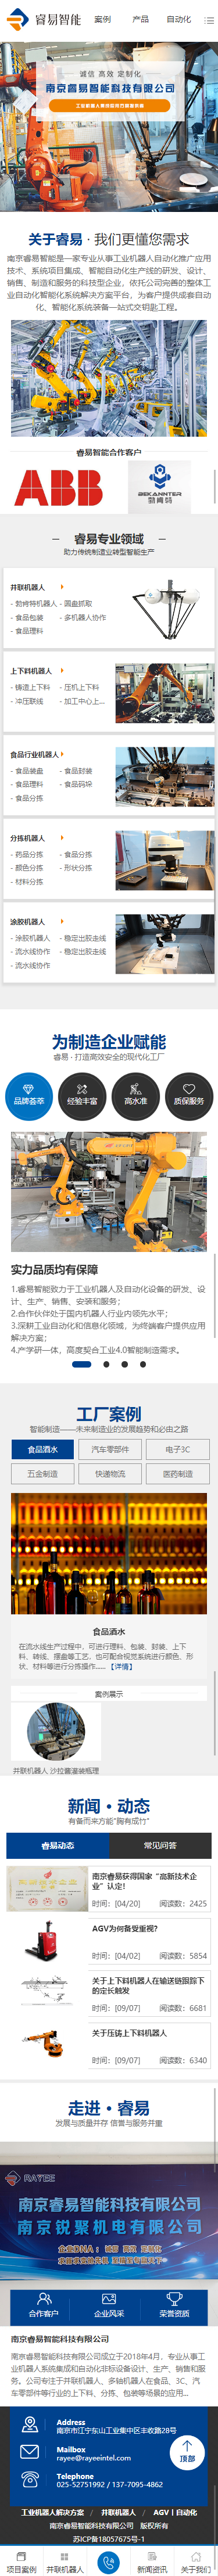 南京睿易工业机器人营销型网站 手机端预览图